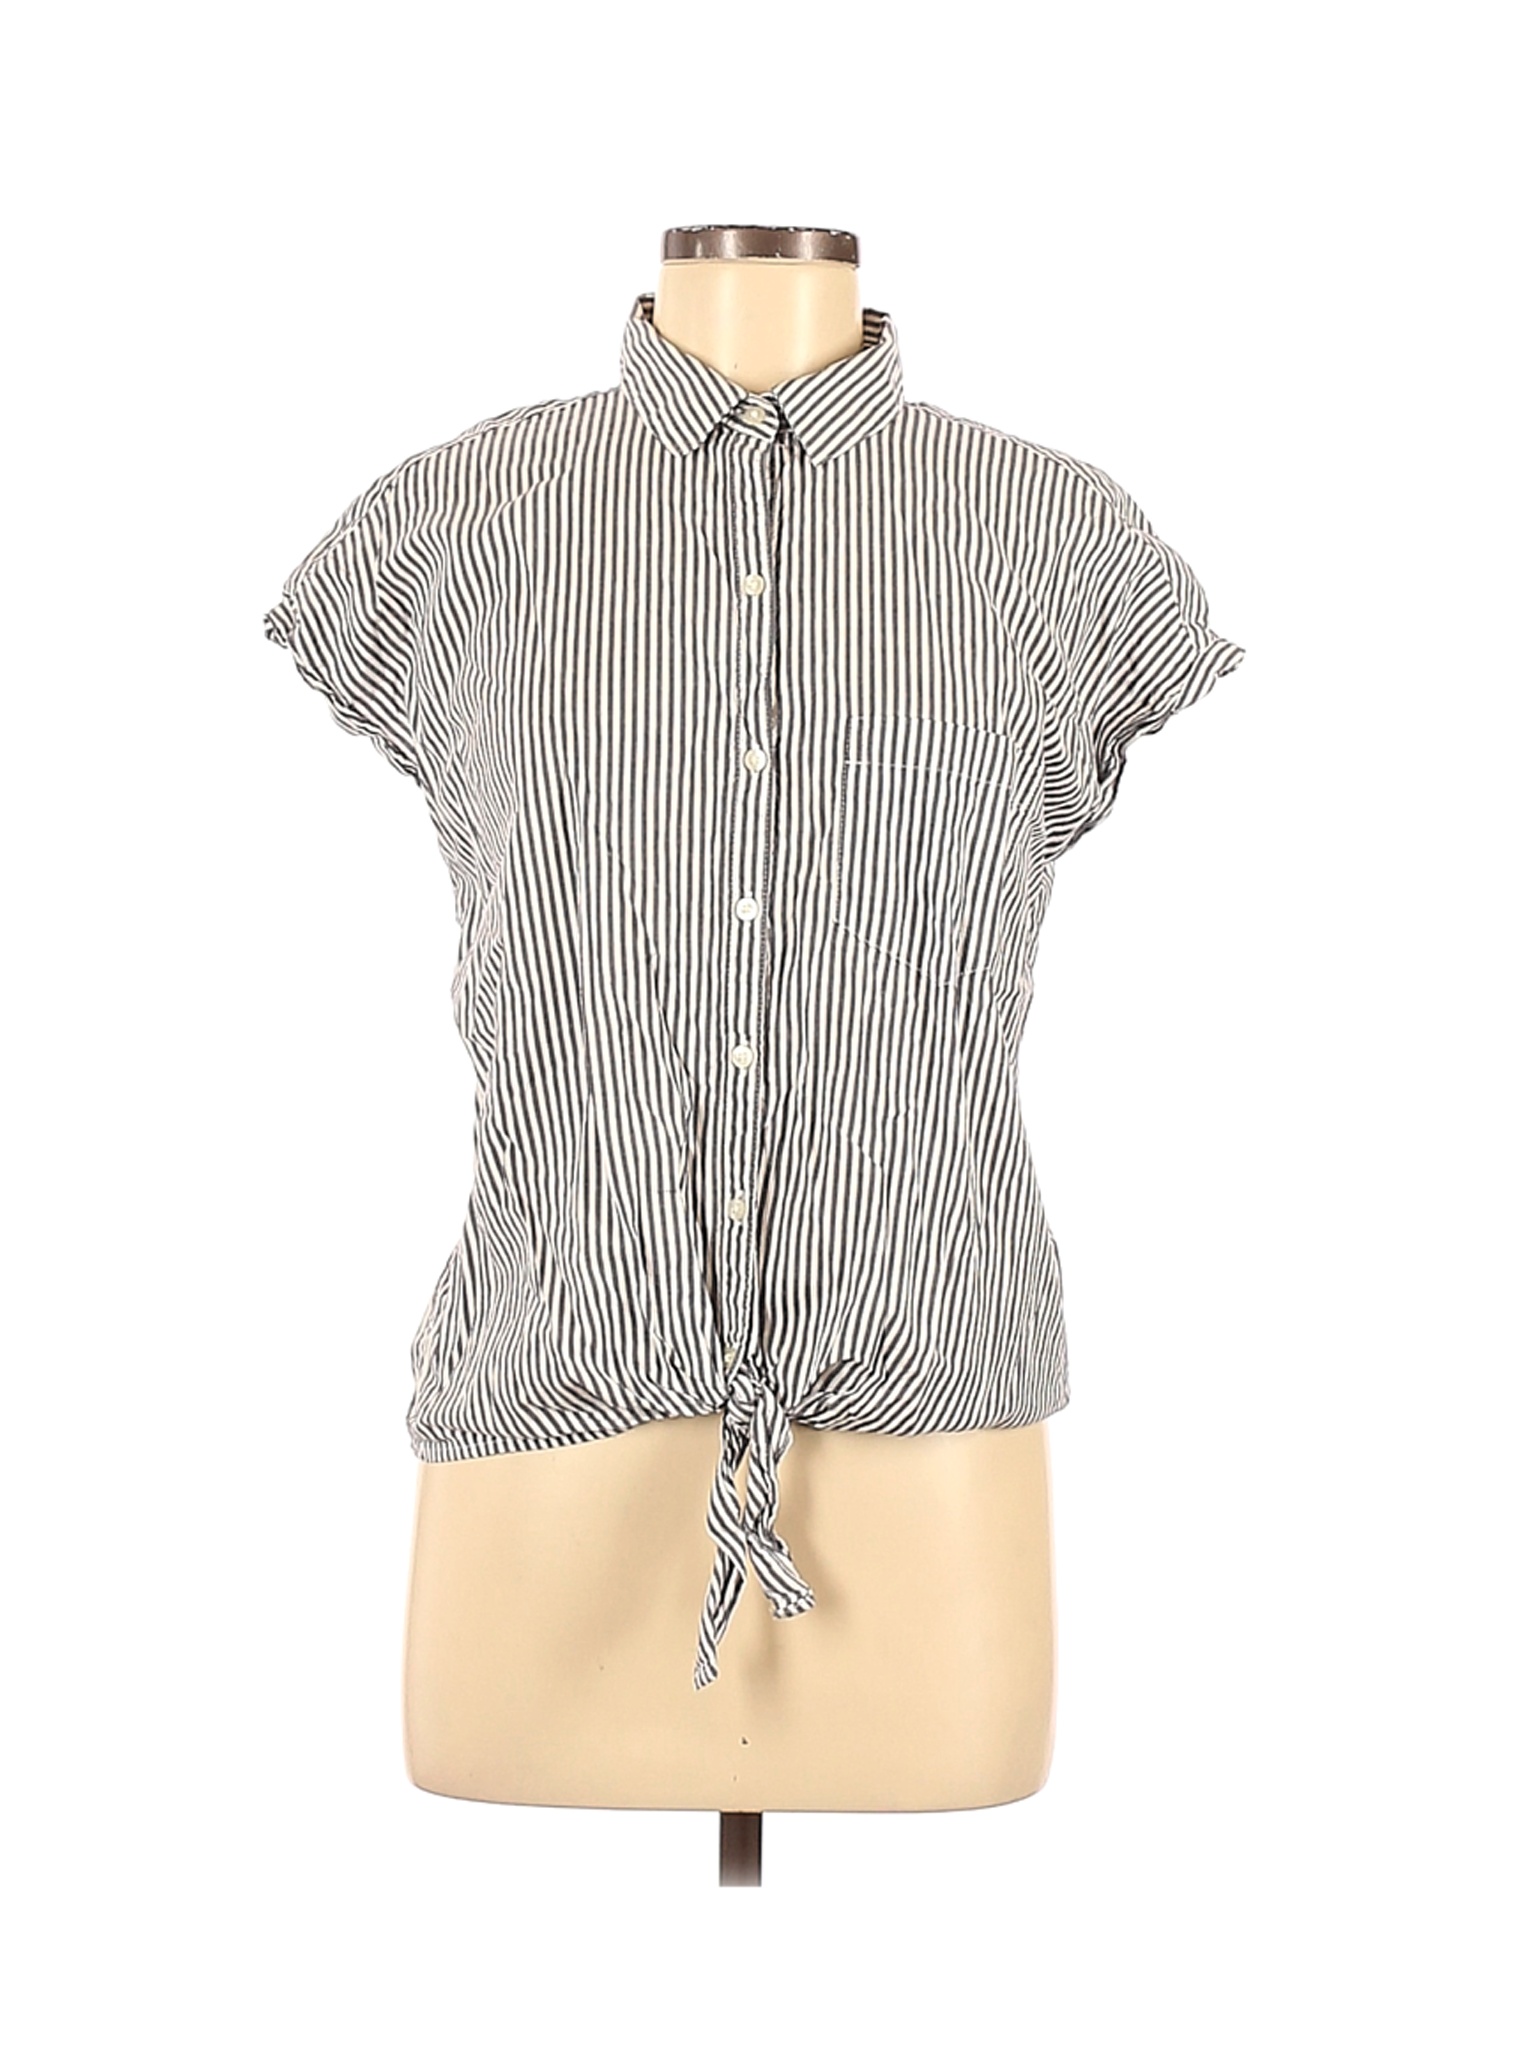 Old Navy Women White Short Sleeve Blouse M | eBay